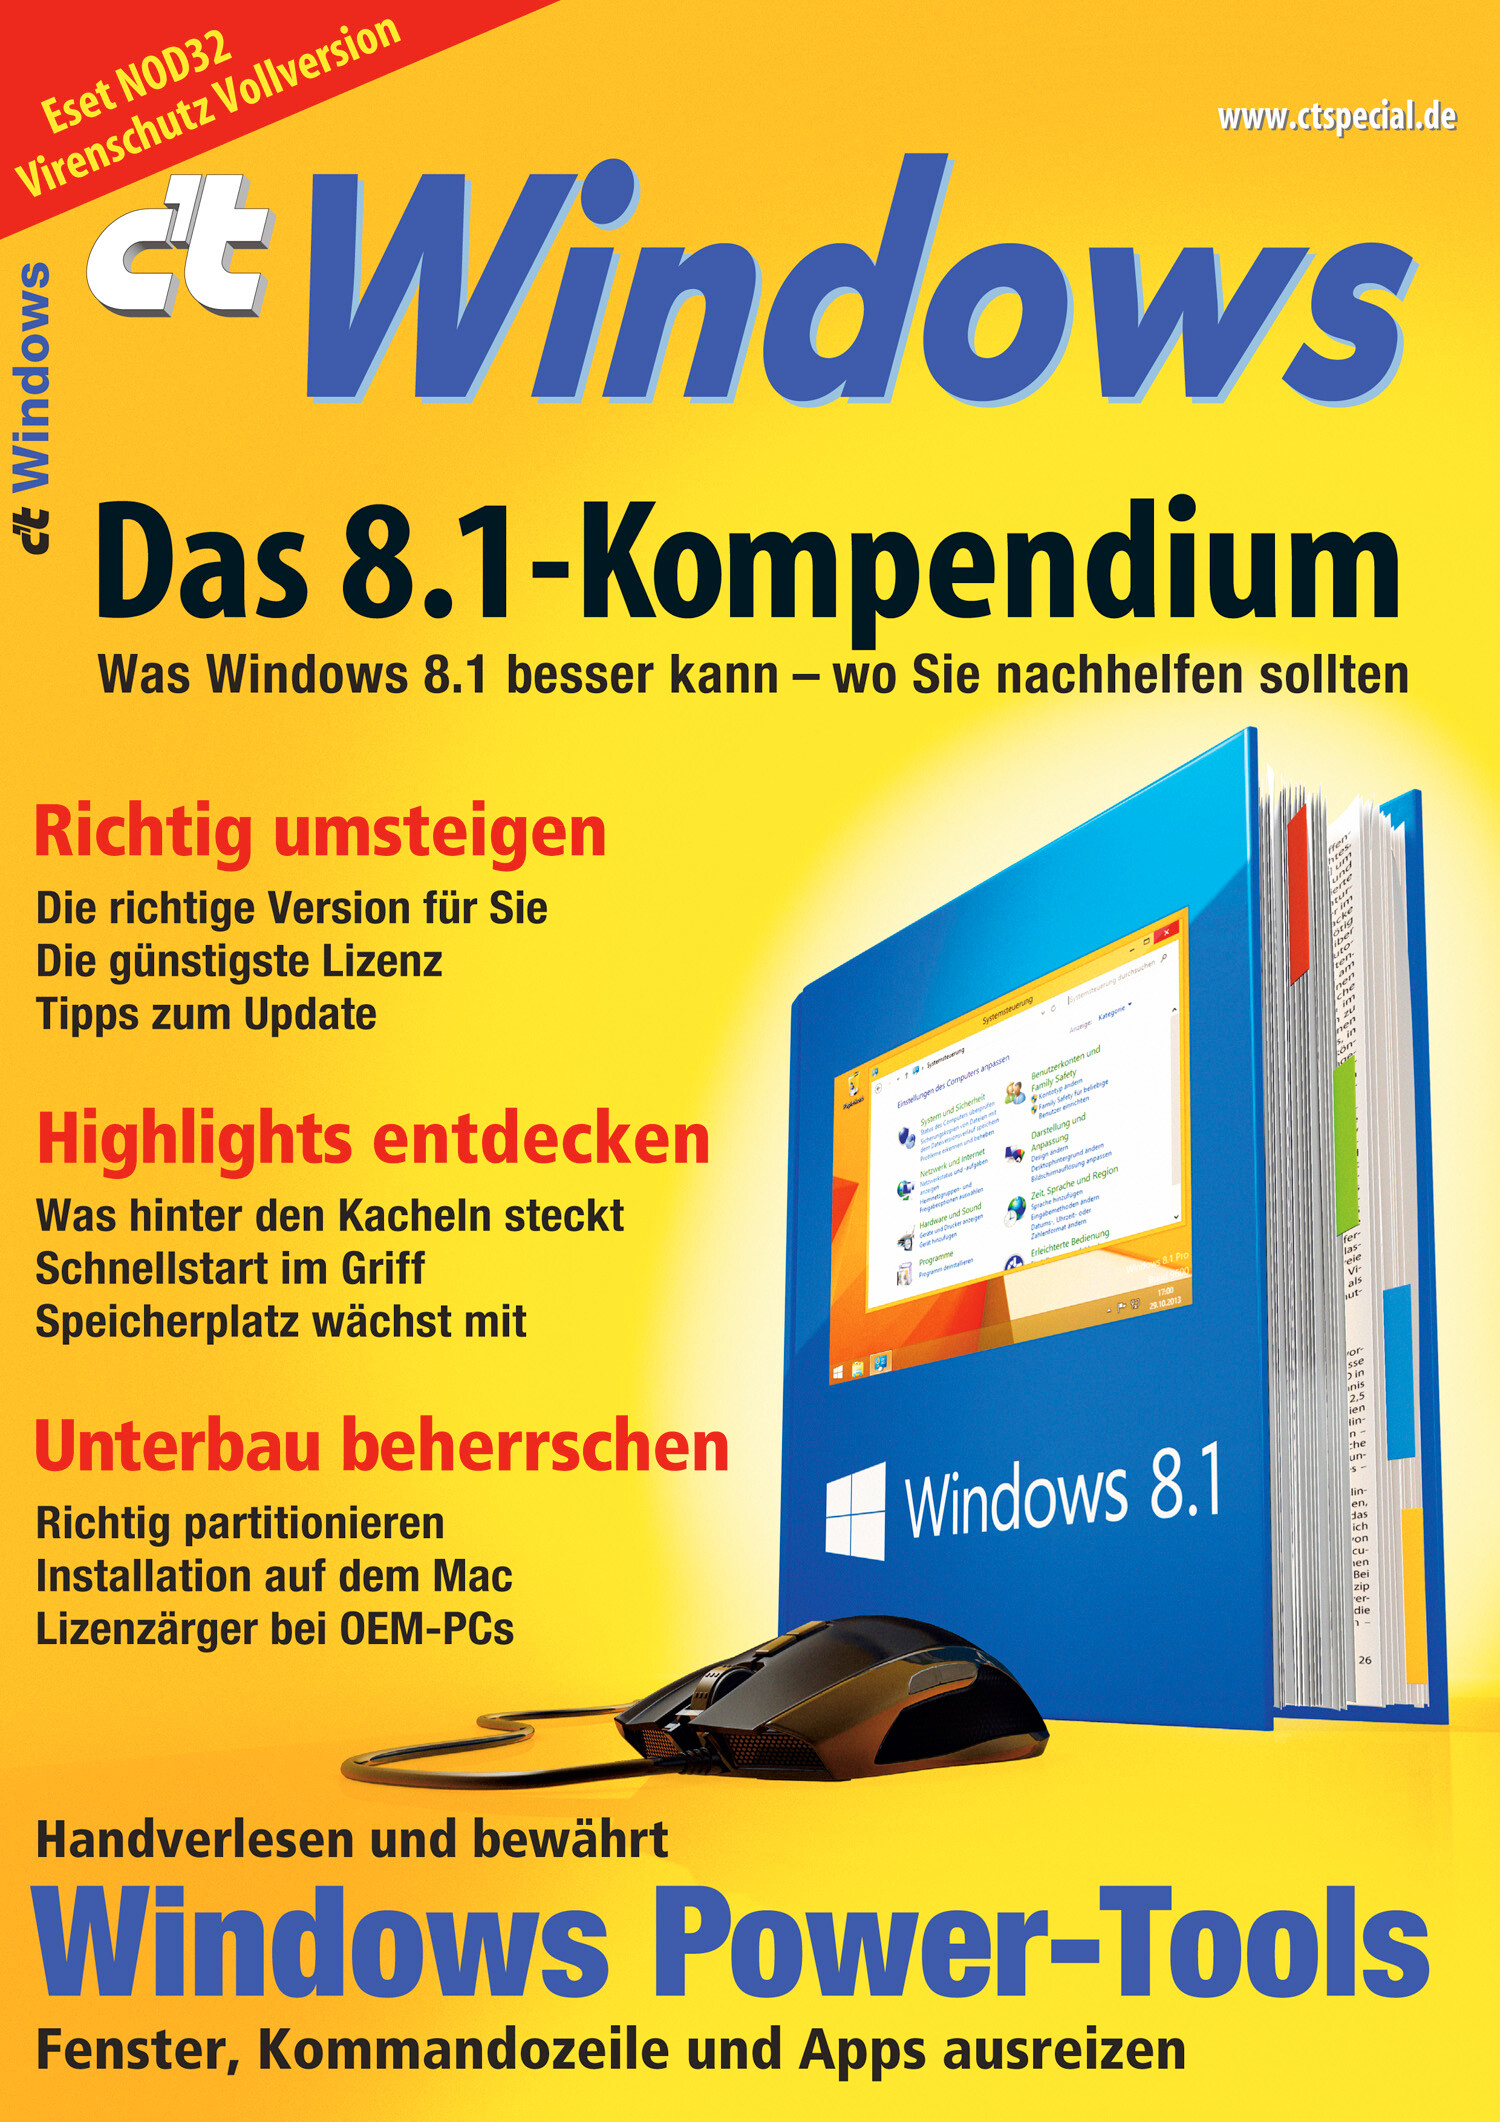 c't Windows 8.1 - 2014